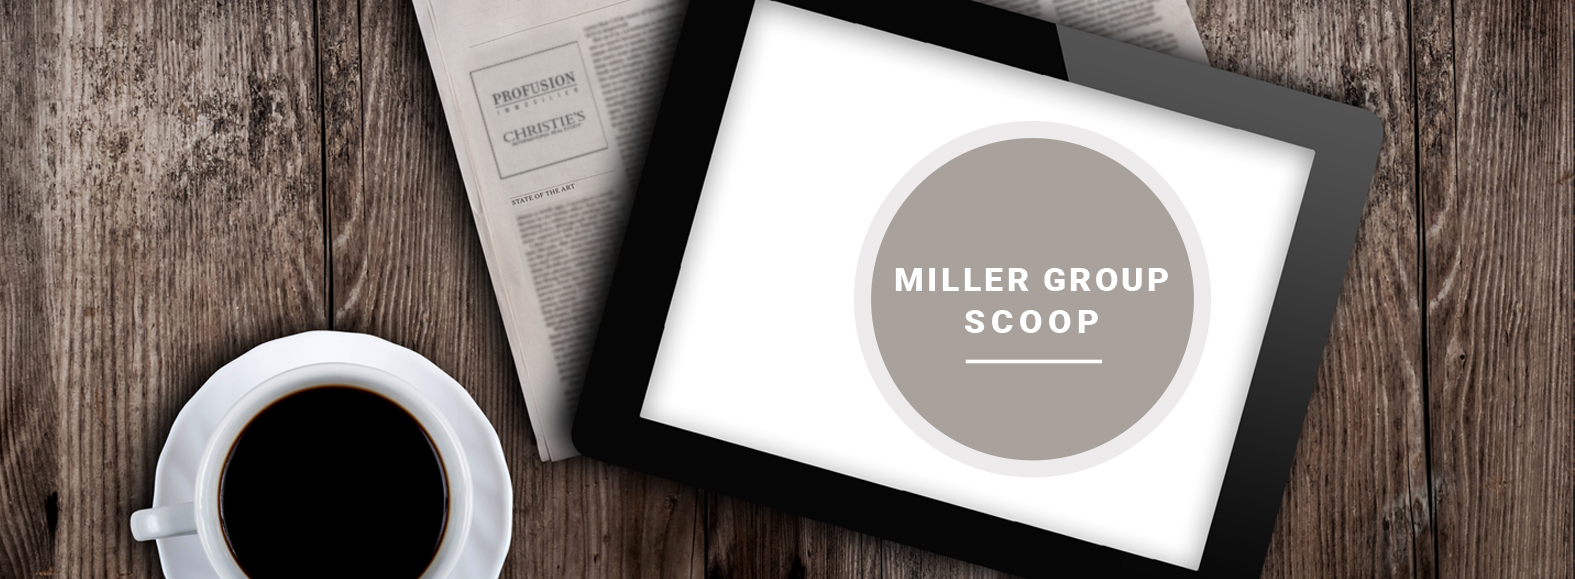 miller-group-scoop